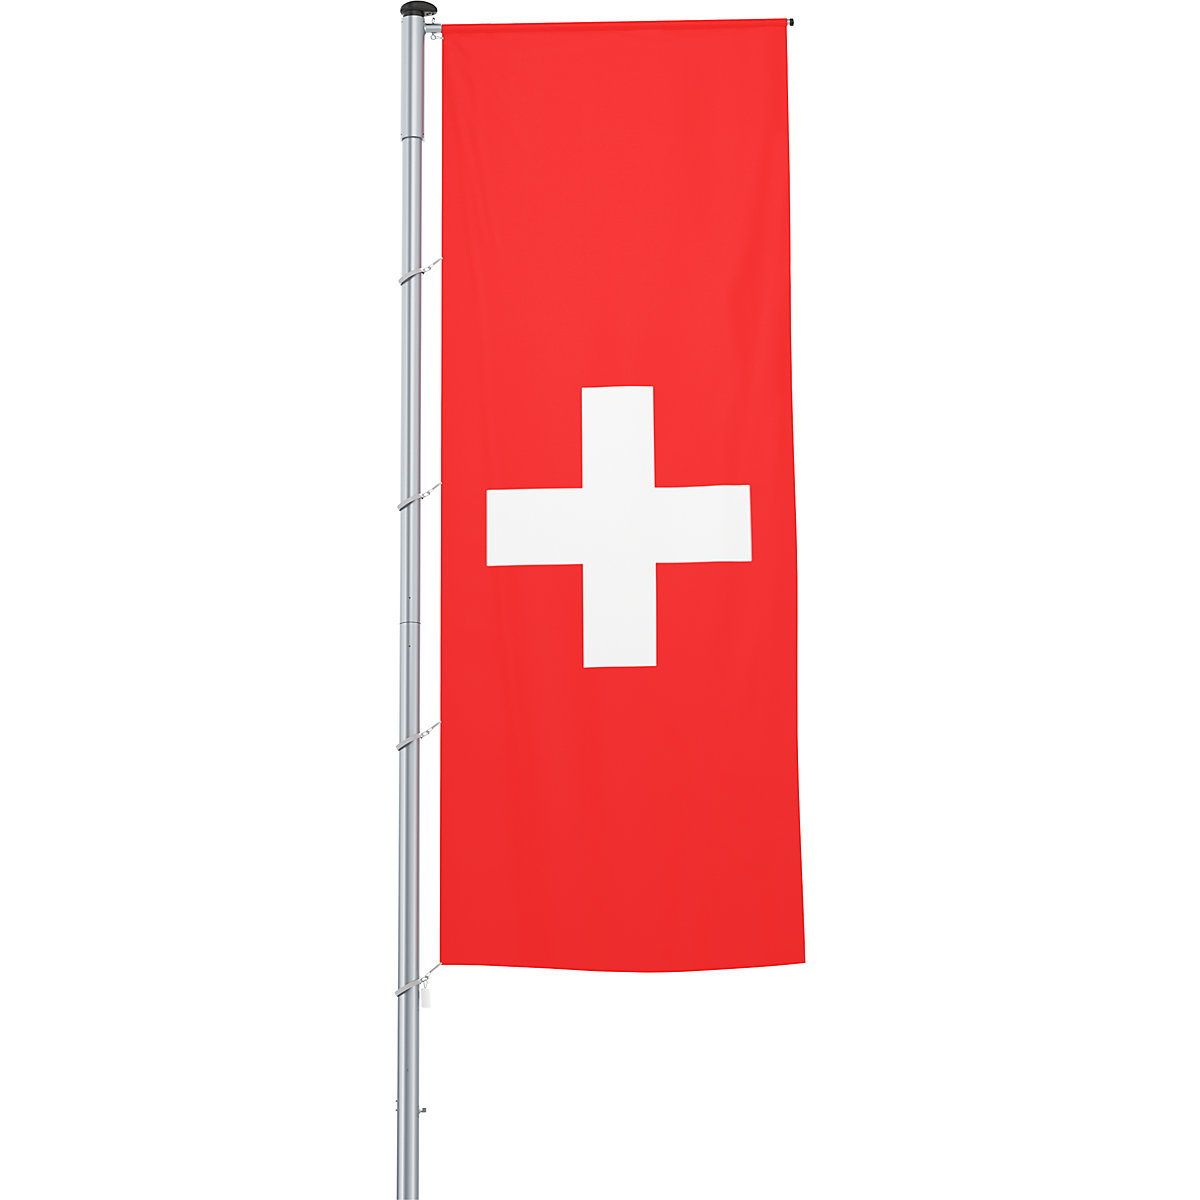 Mannus – Bandera con pluma/bandera del país, formato 1,2 x 3 m, Suiza